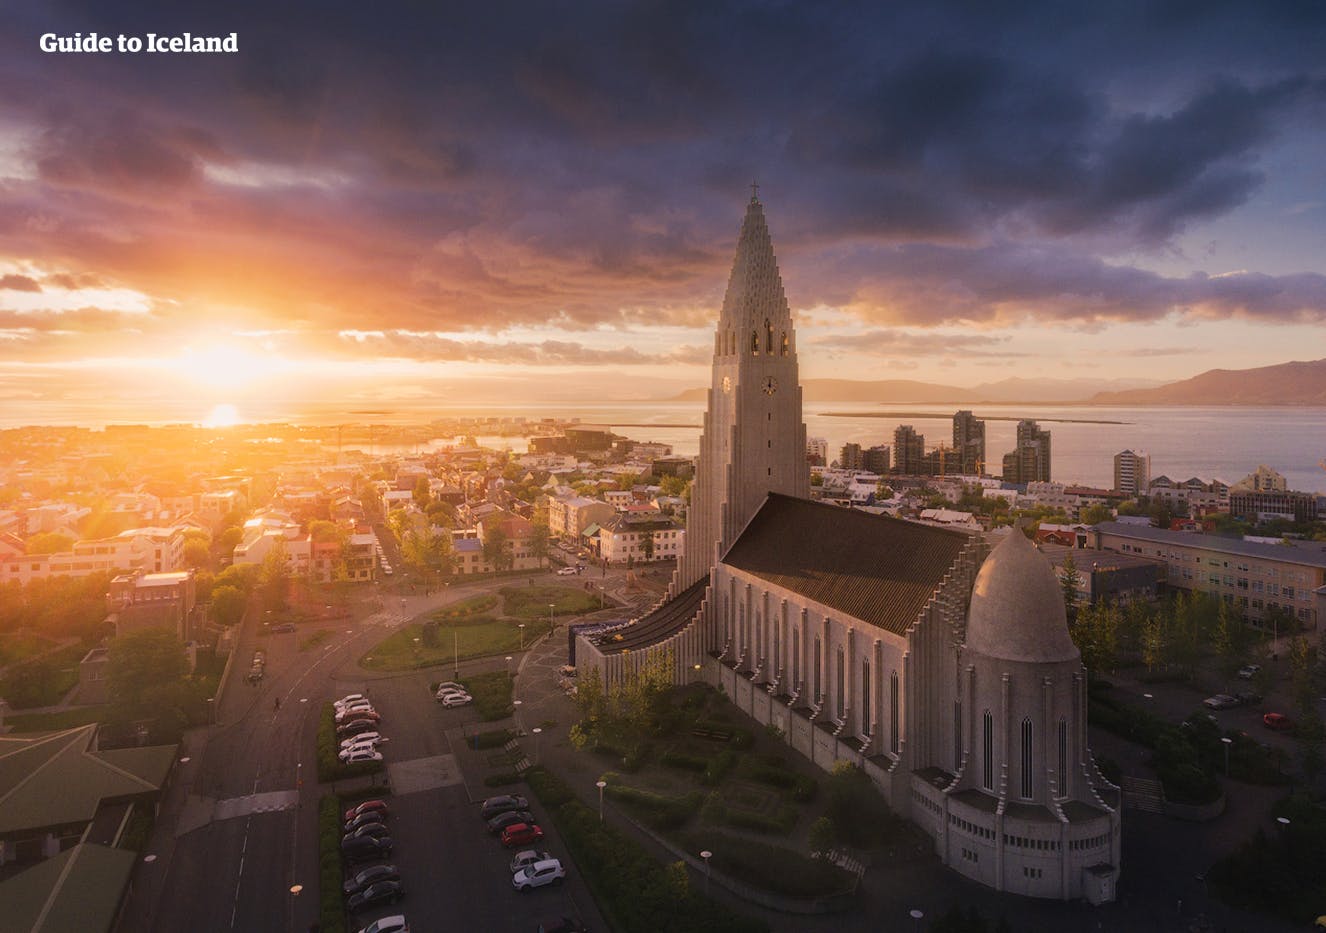 哈尔格林姆斯大教堂是冰岛首都雷克雅未克文化标志之一